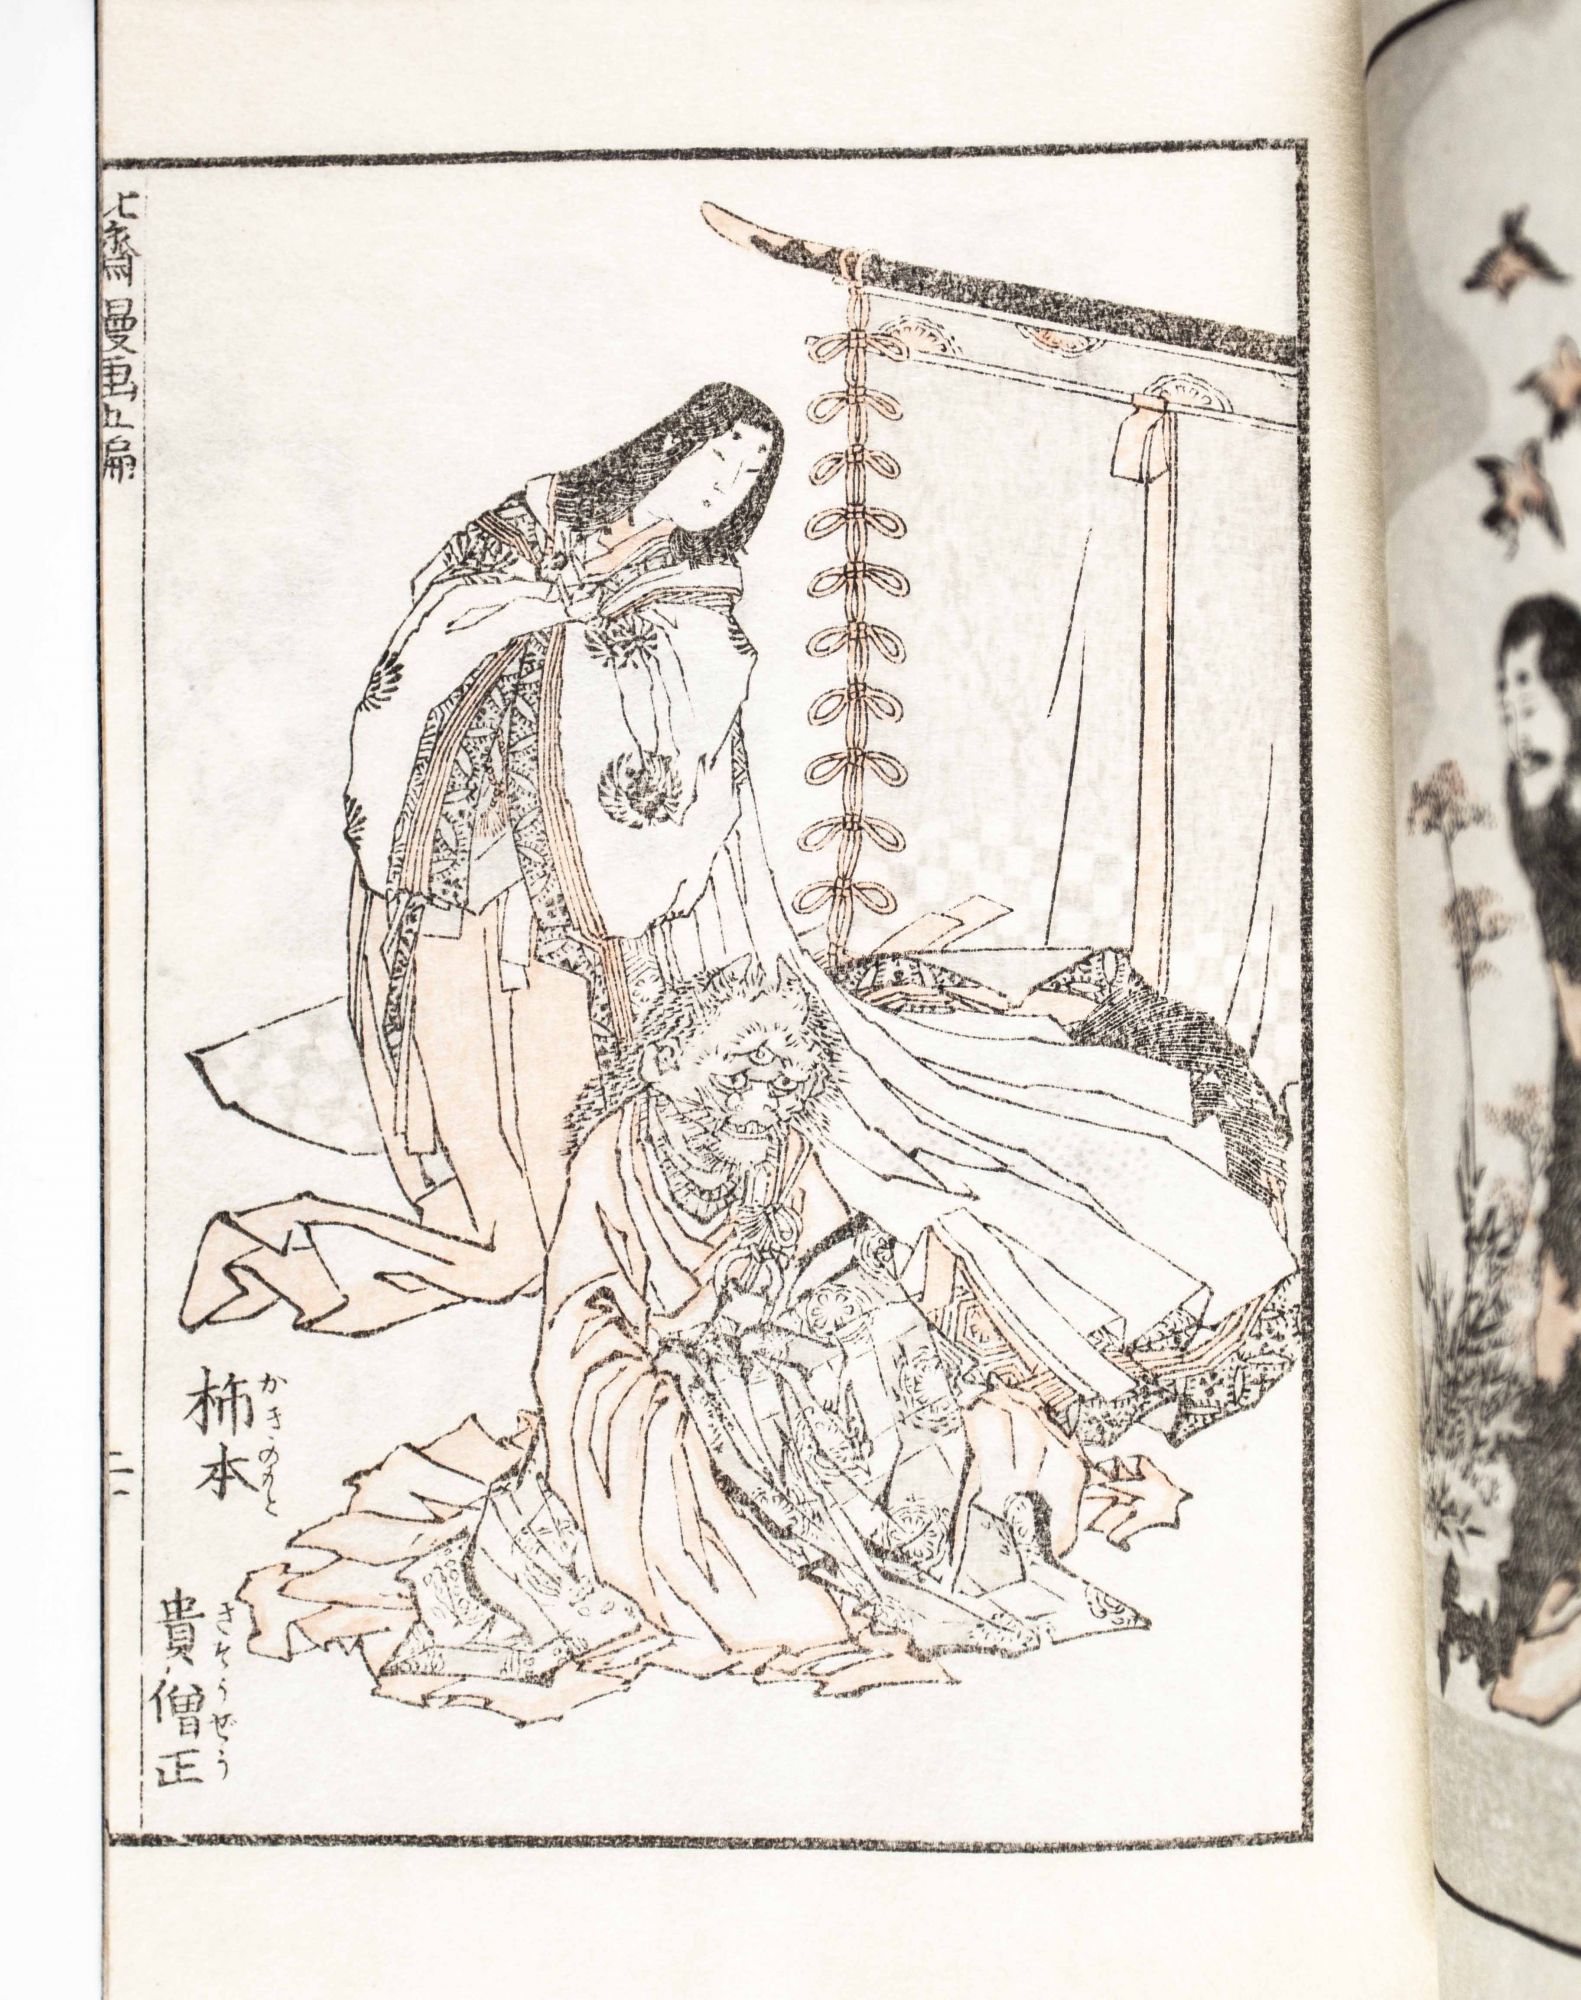 北齋漫畵 Hokusai Manga: The Sketchbooks of Hokusai 15 vols. + Booklet, complete  by Michiaki Kawakita, George Saito, Hokusai Katsushika, Japanese text on 